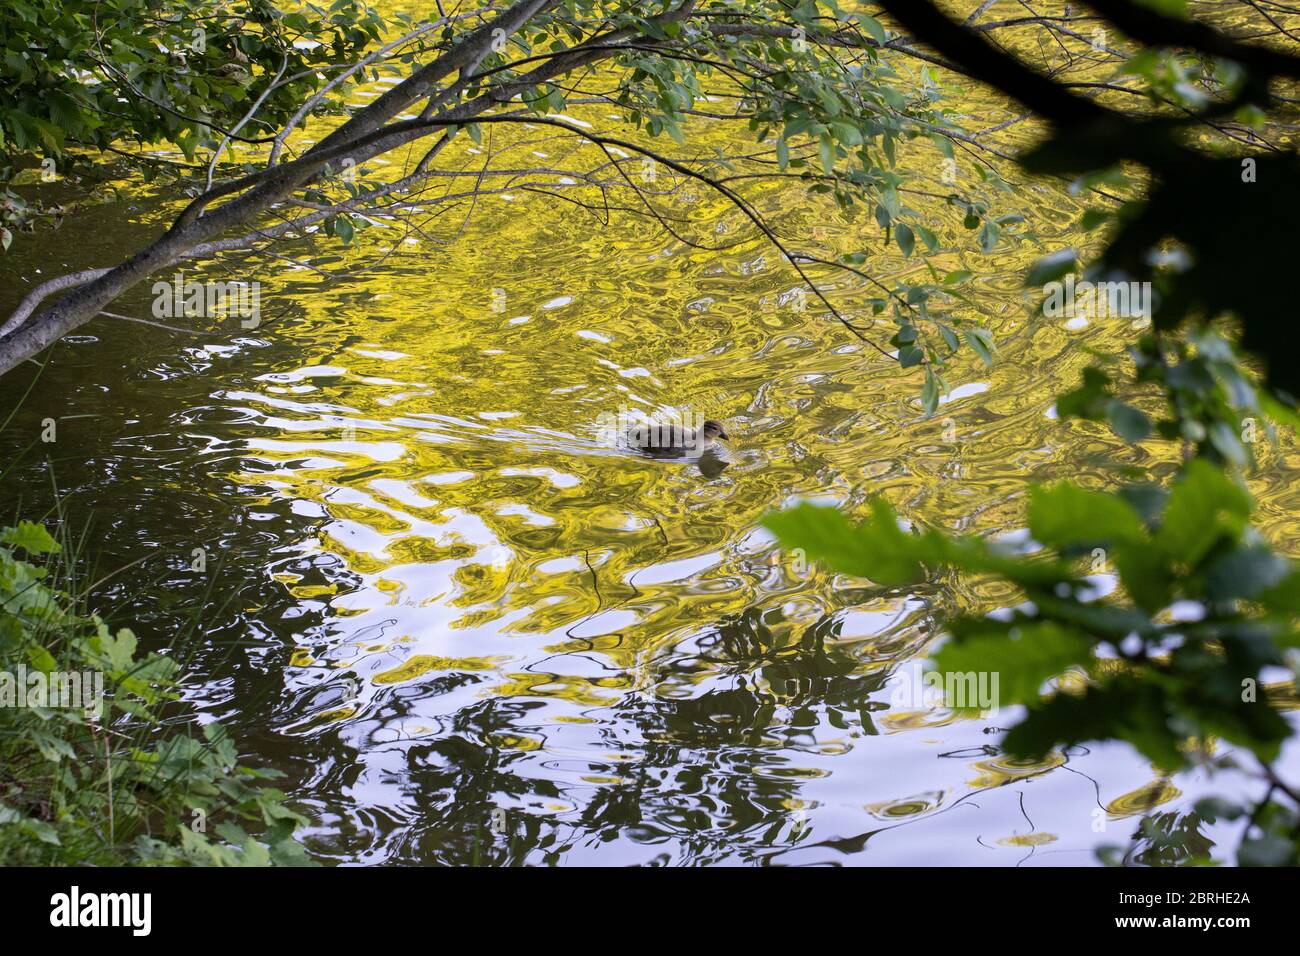 Un canard nageant dans un lac photographié à travers des branches d'arbre Banque D'Images